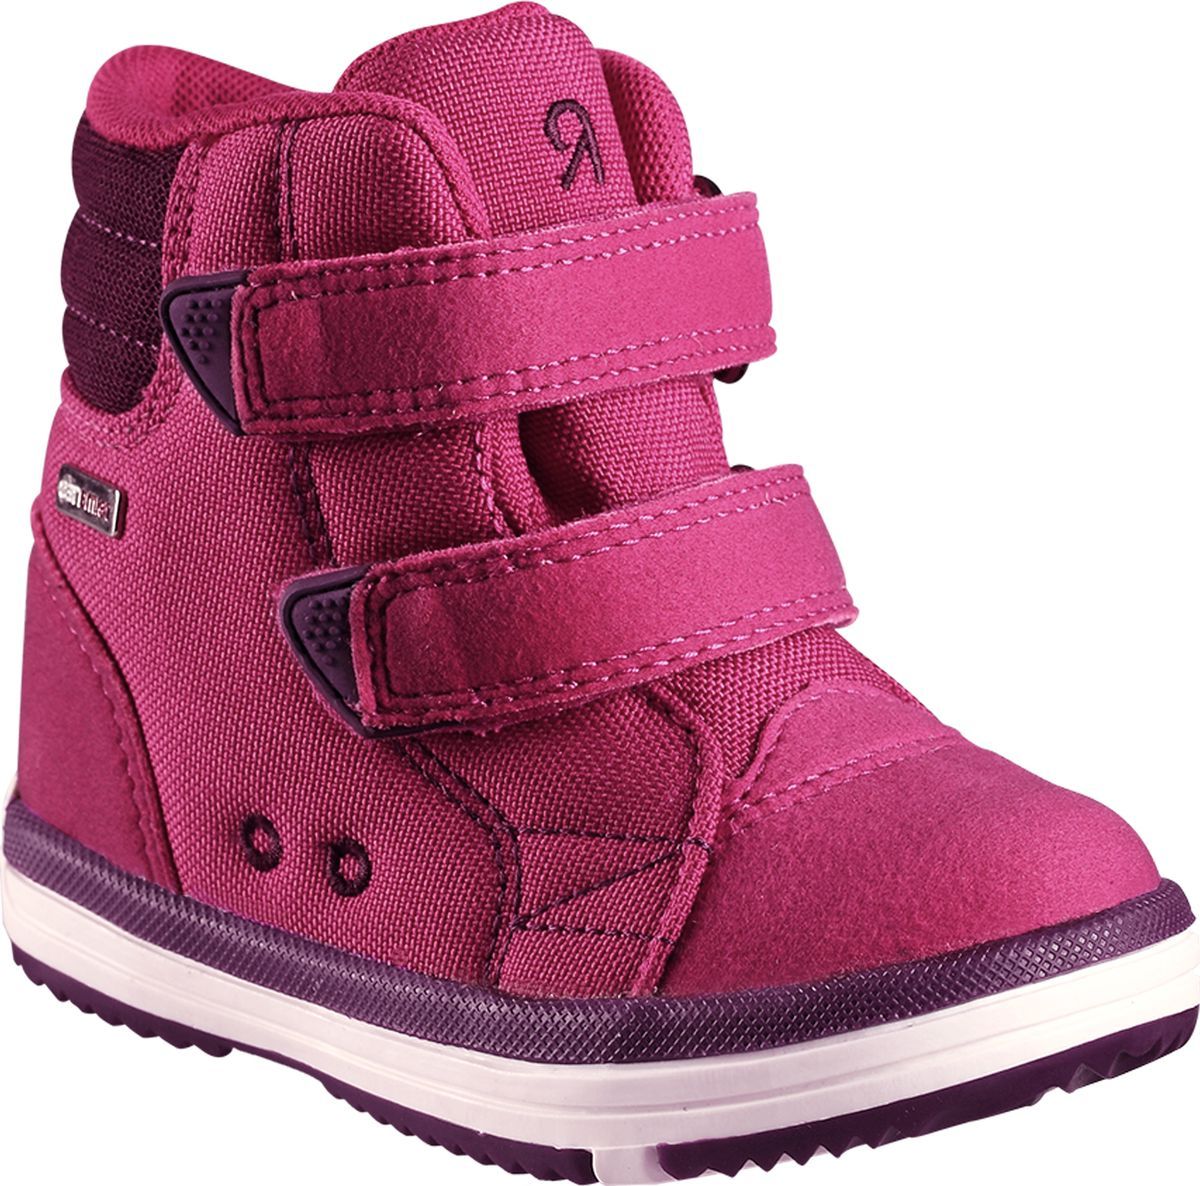 Ботинки детские Reima Patter, цвет: розовый. 5693443600. Размер 30